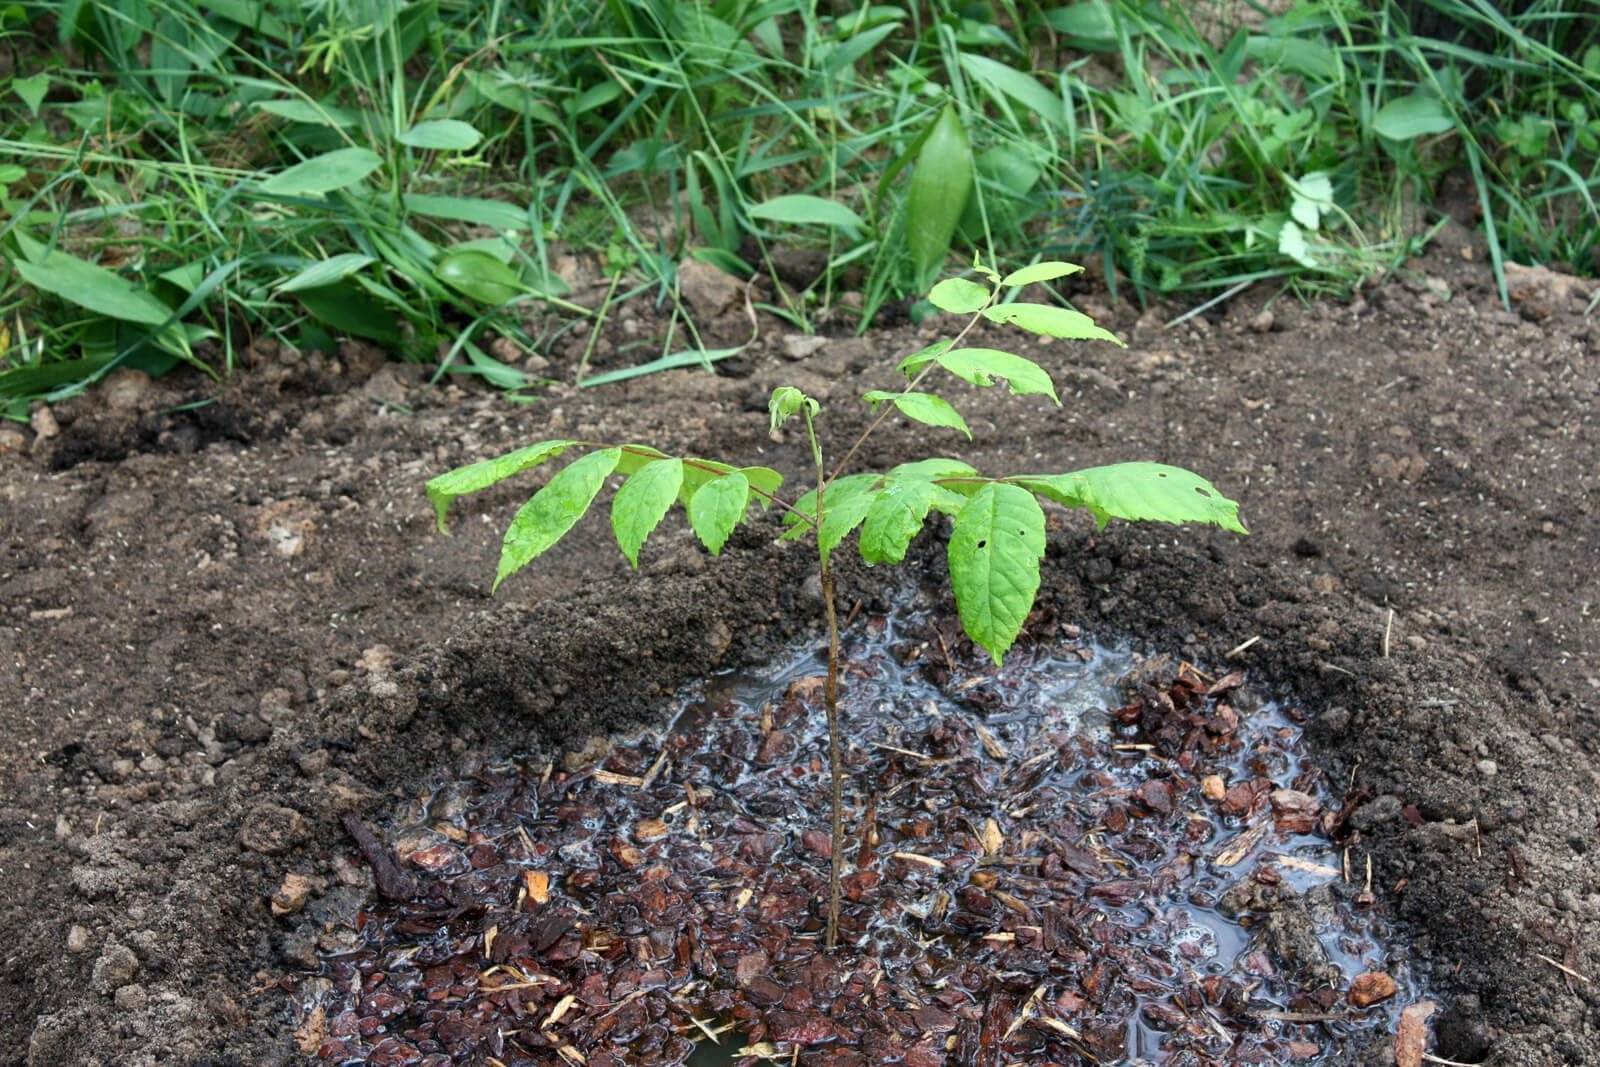 Как правильно посадить дерево грецкого ореха